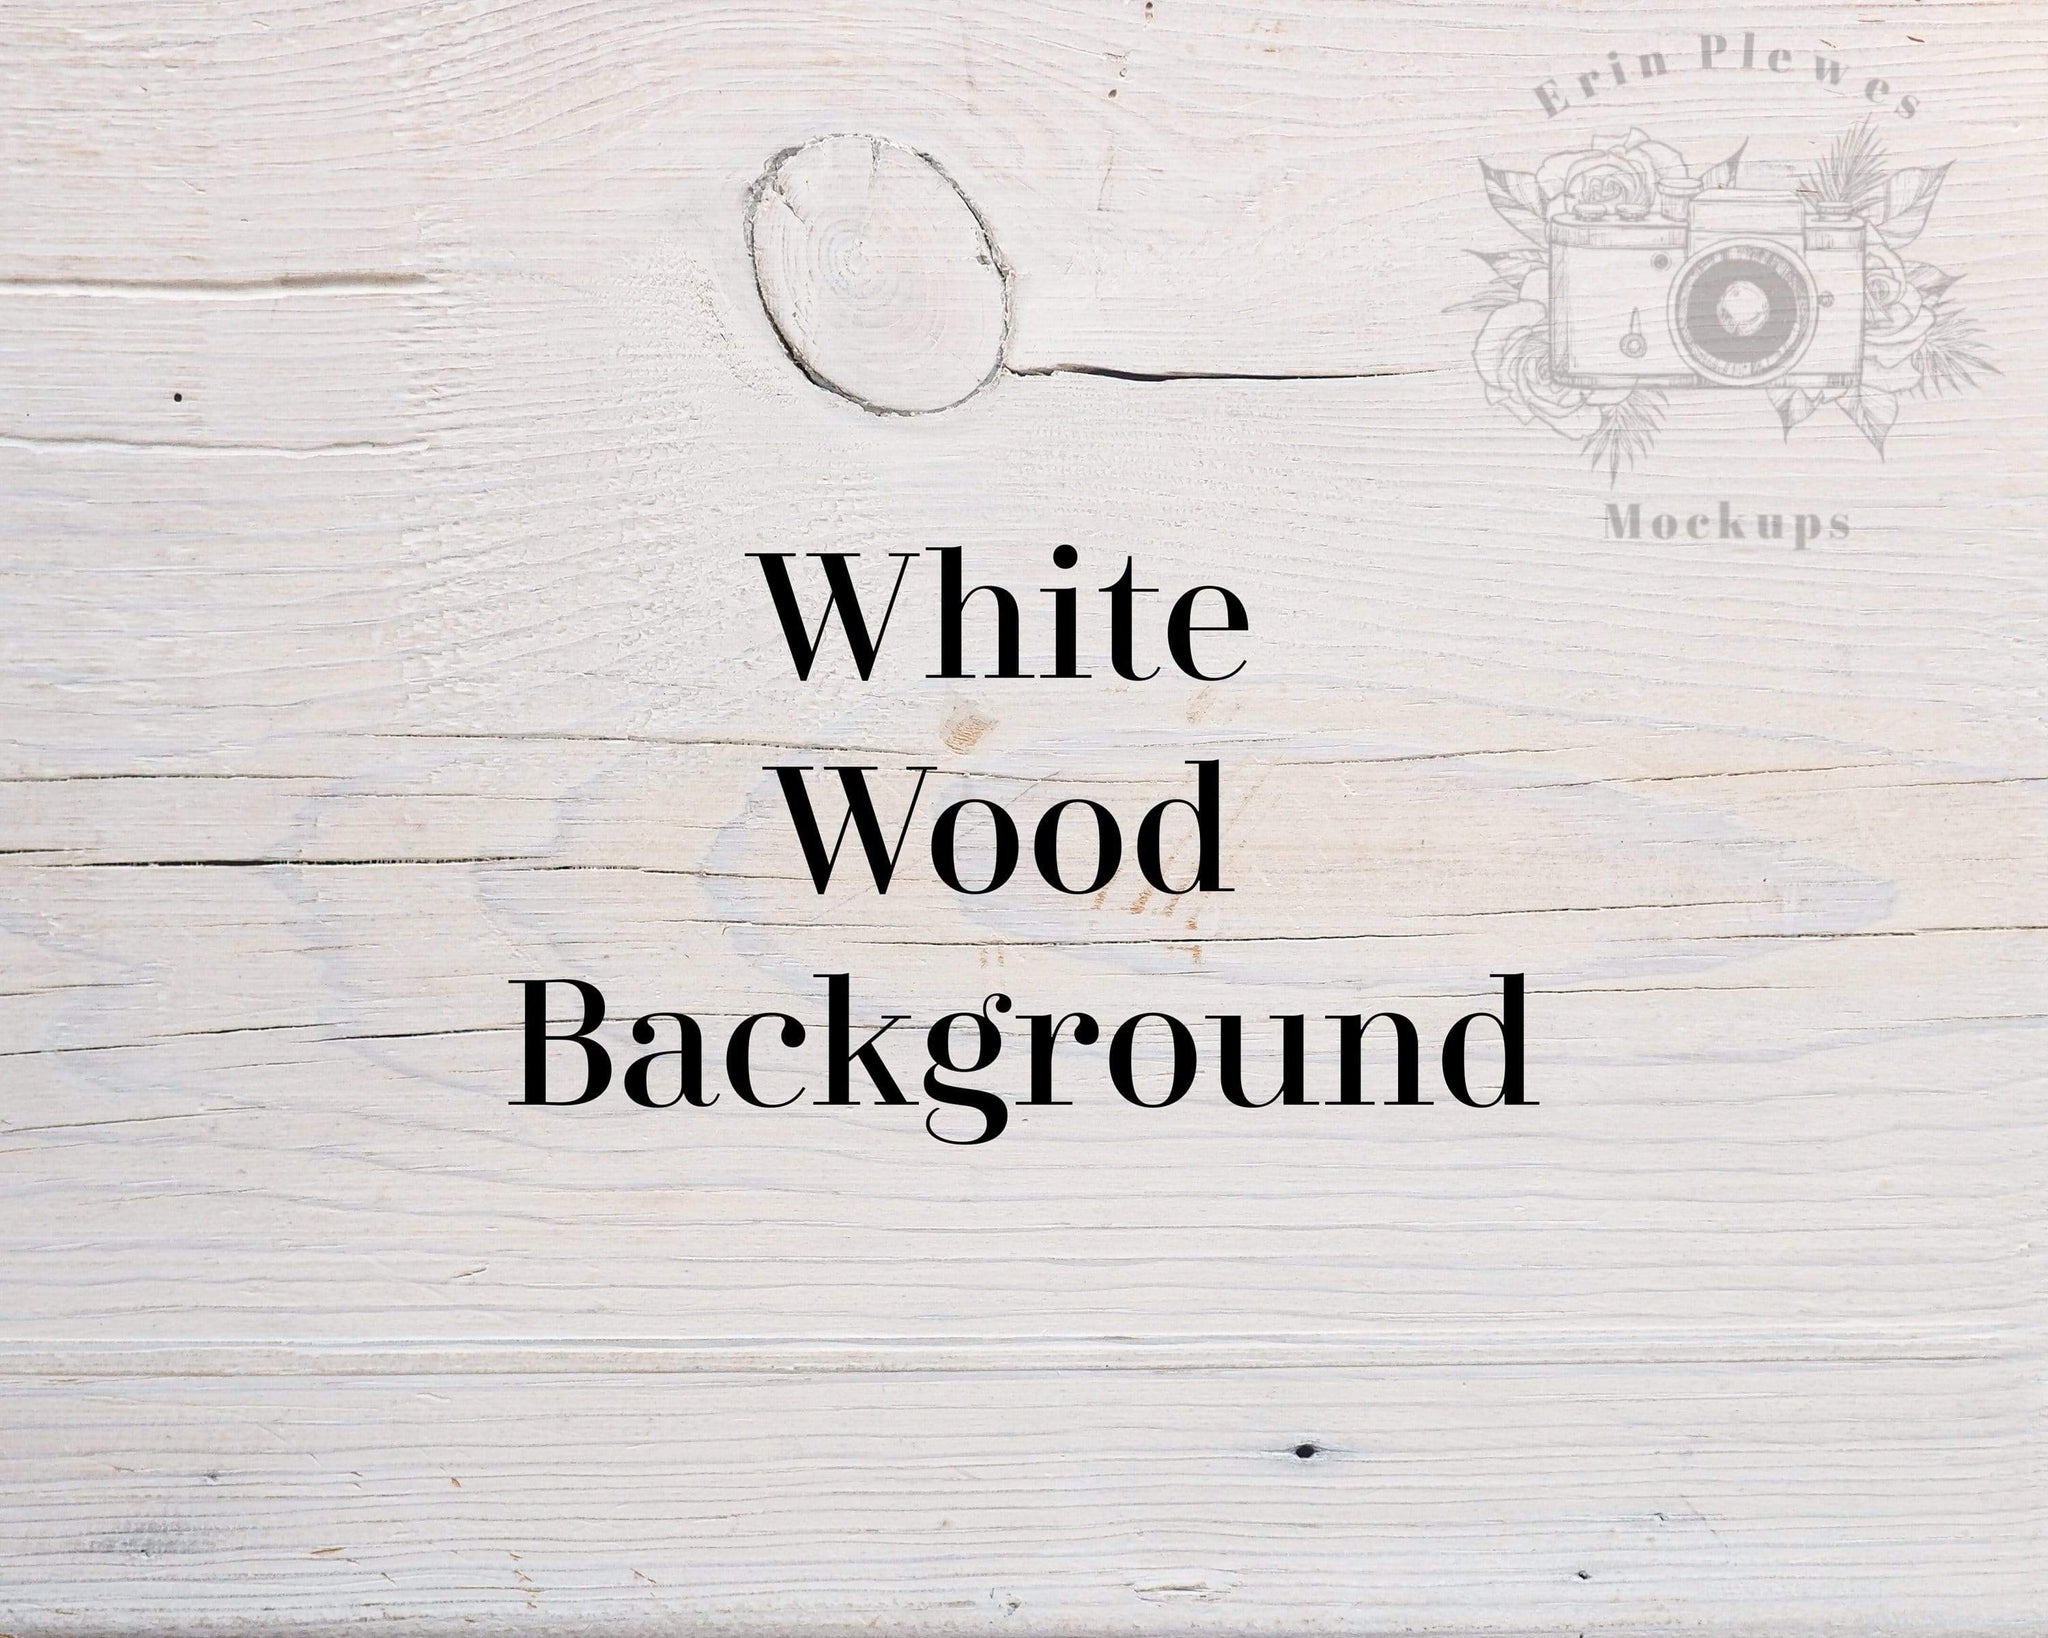 Nền gỗ trắng là lựa chọn trang trí rất phổ biến trong thiết kế nội thất ngày nay. Hãy khám phá những bức tranh nền gỗ trắng rất đẹp và tinh tế trong các dự án trang trí. Bạn sẽ tìm thấy nhiều ý tưởng sáng tạo để ứng dụng trong không gian sống của mình.